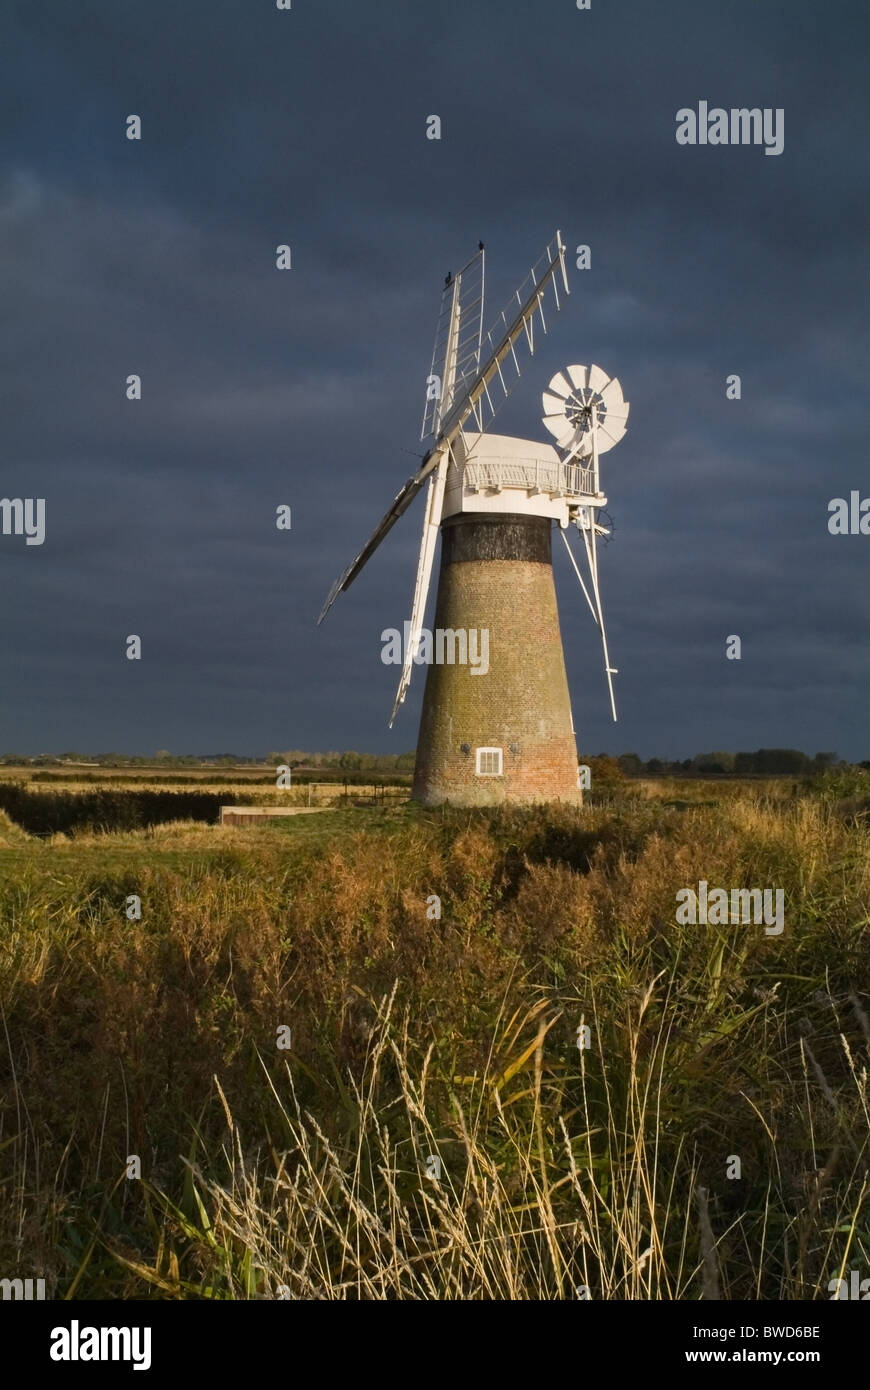 Un moulin à vent dans les Norfolk Broads prises une aube Banque D'Images